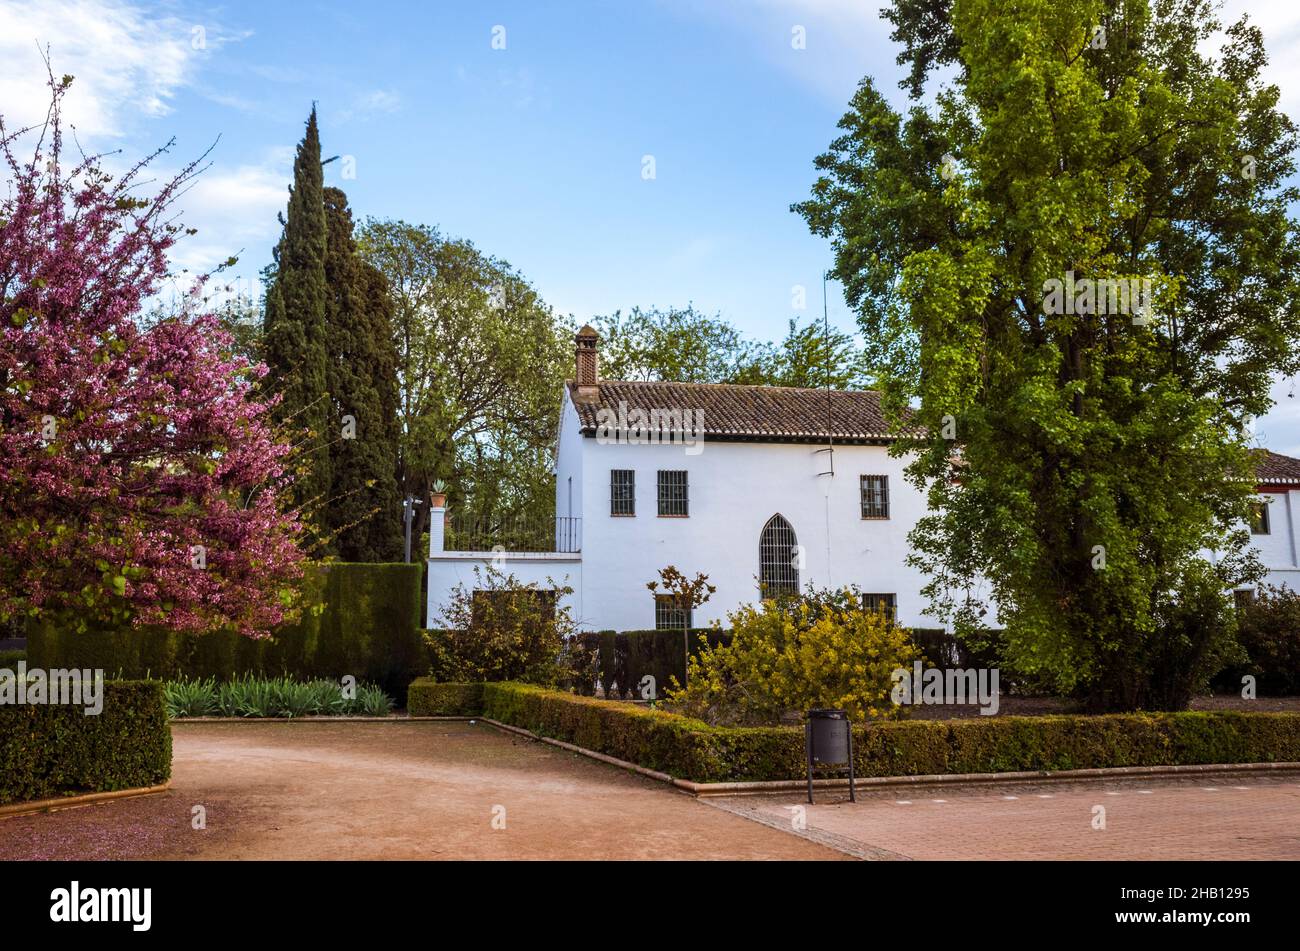 Granada, Andalusien, Spanien : Casa-Museo Federico García Lorca, besser bekannt als Huerta de San Vicente, ehemaliges Sommerhaus der Familie García Lorca aus dem Jahr 19 Stockfoto